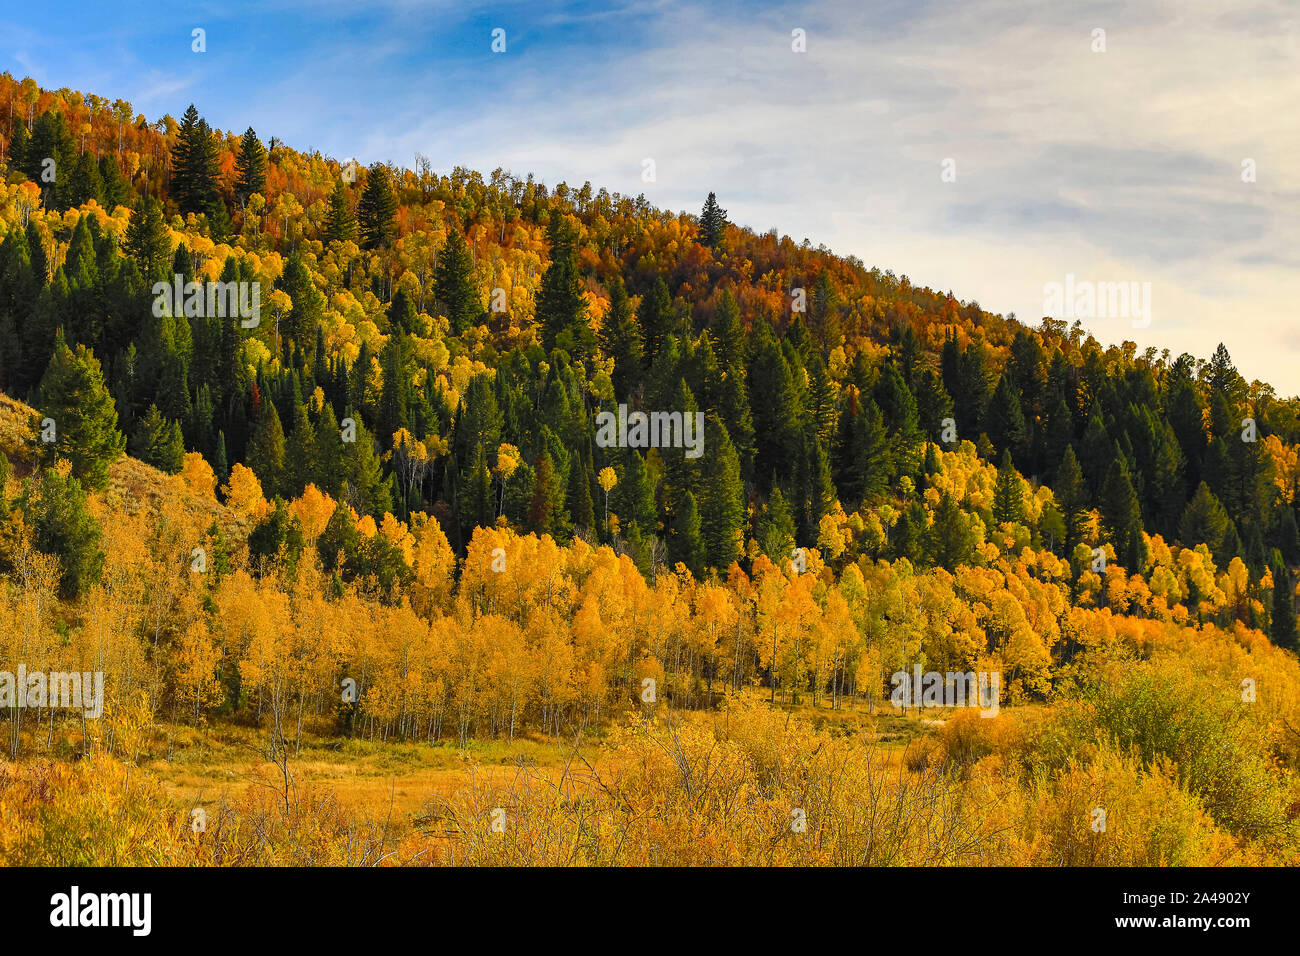 Die Farben des Herbstes auf den Bäumen entlang US Highway 89, der Logan Canyon Scenic Byway in Logan Canyon, Uinta-Wasatch-Cache National Forest im Norden von Utah. Stockfoto